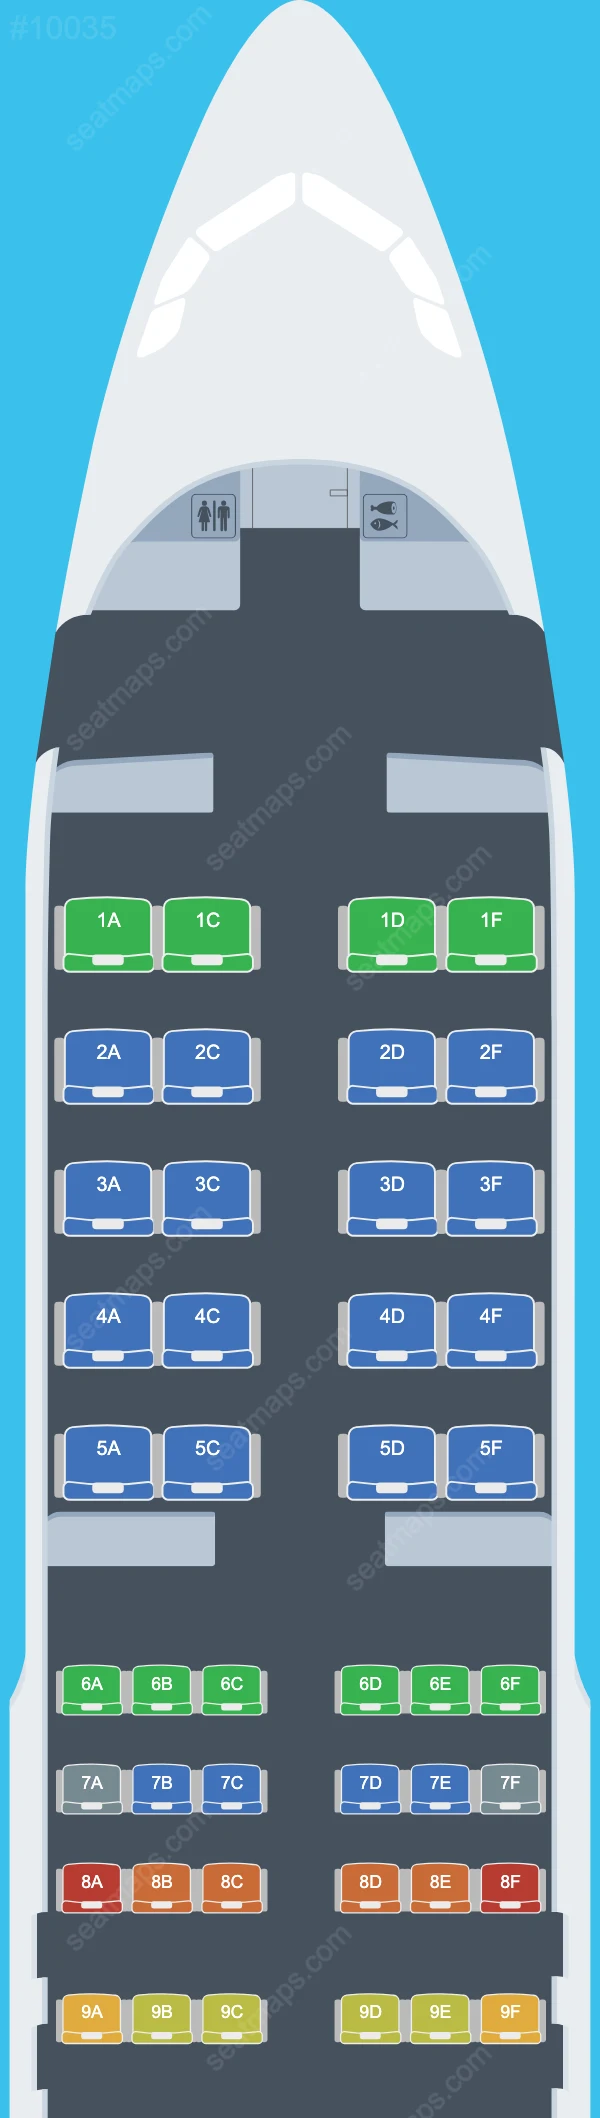 Aeroflot Airbus A320 Seat Maps A320-200 V.2